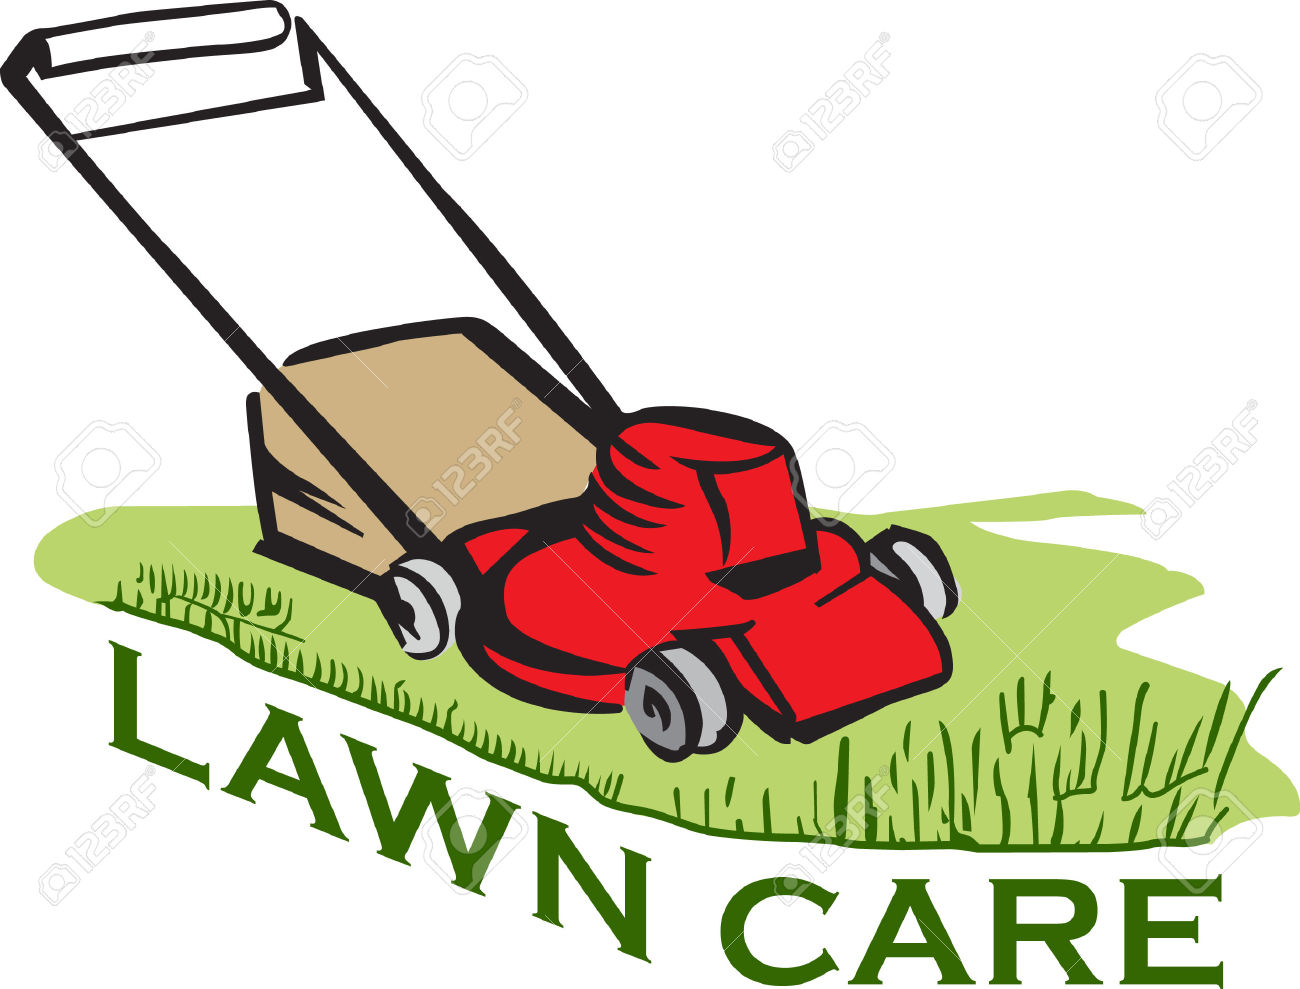 Lawnmower clipart lawn service, Lawnmower lawn service 